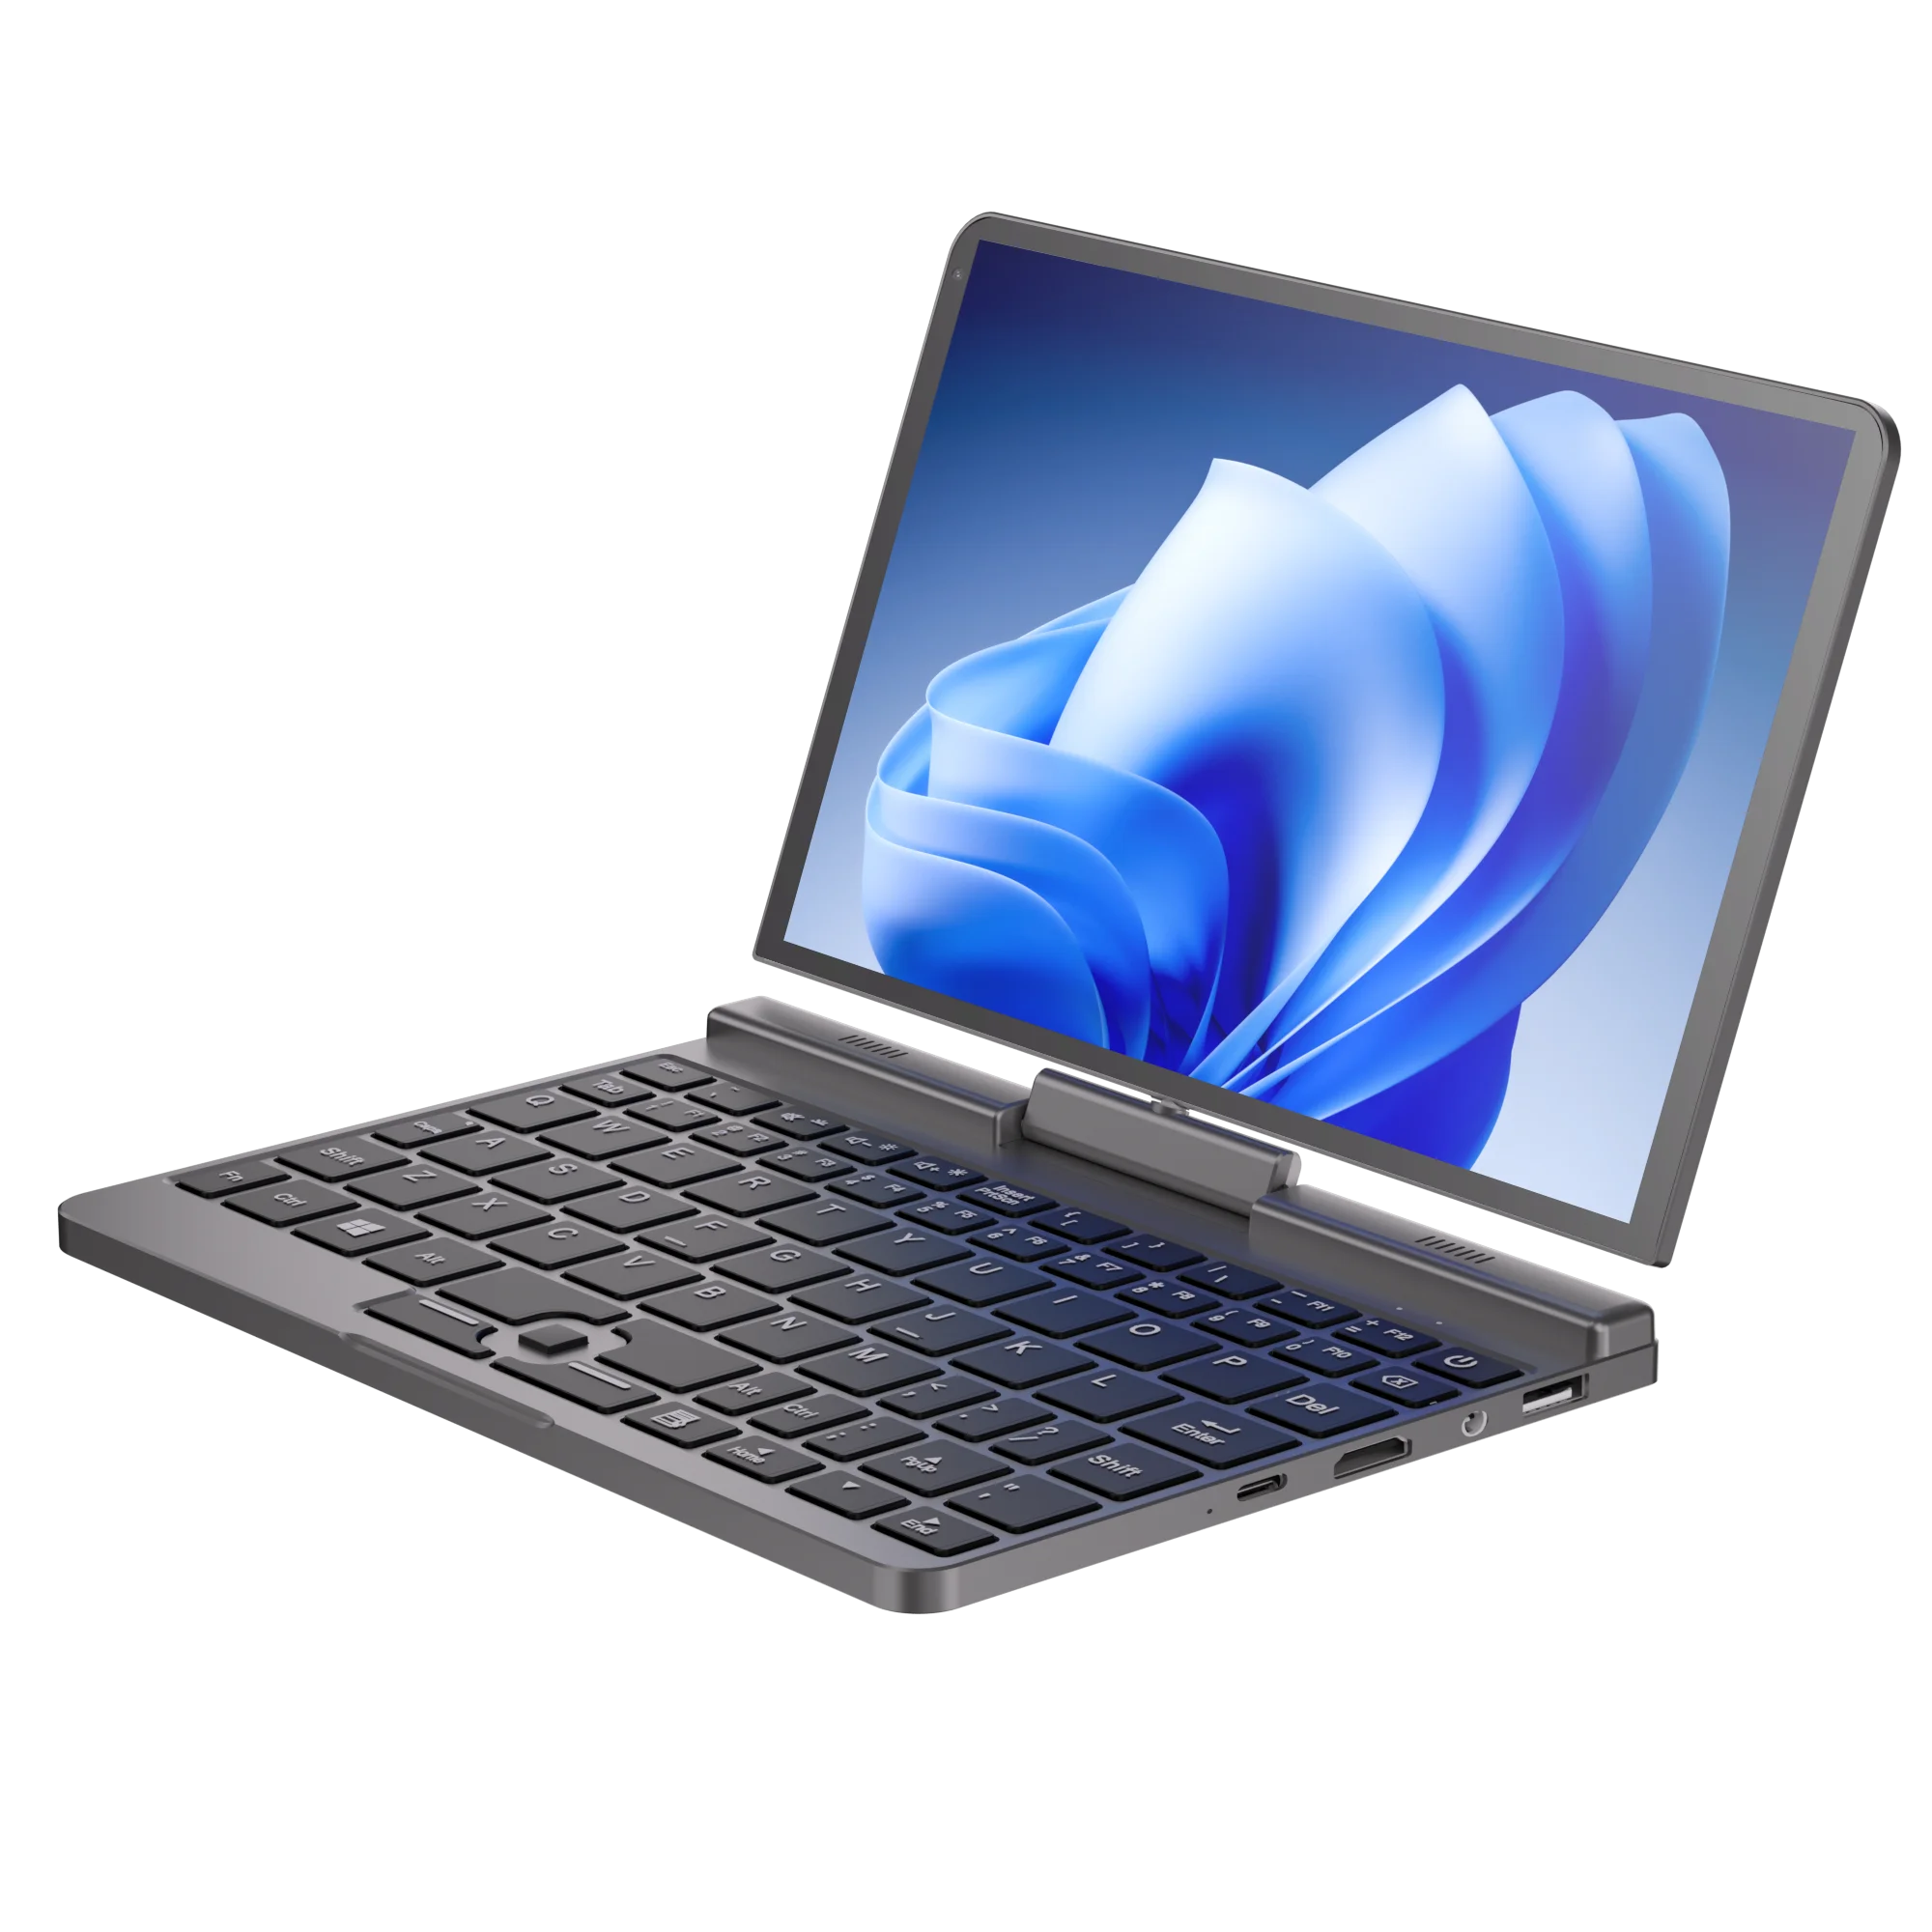 

YSJMNPC 【Super Deal】 мини-ноутбук 12-го поколения Intel N100 четырехъядерный 8-дюймовый экран LPDDR5 12G 4800 МГц Windows 10/11Pro AX WiFi6 BT5.2